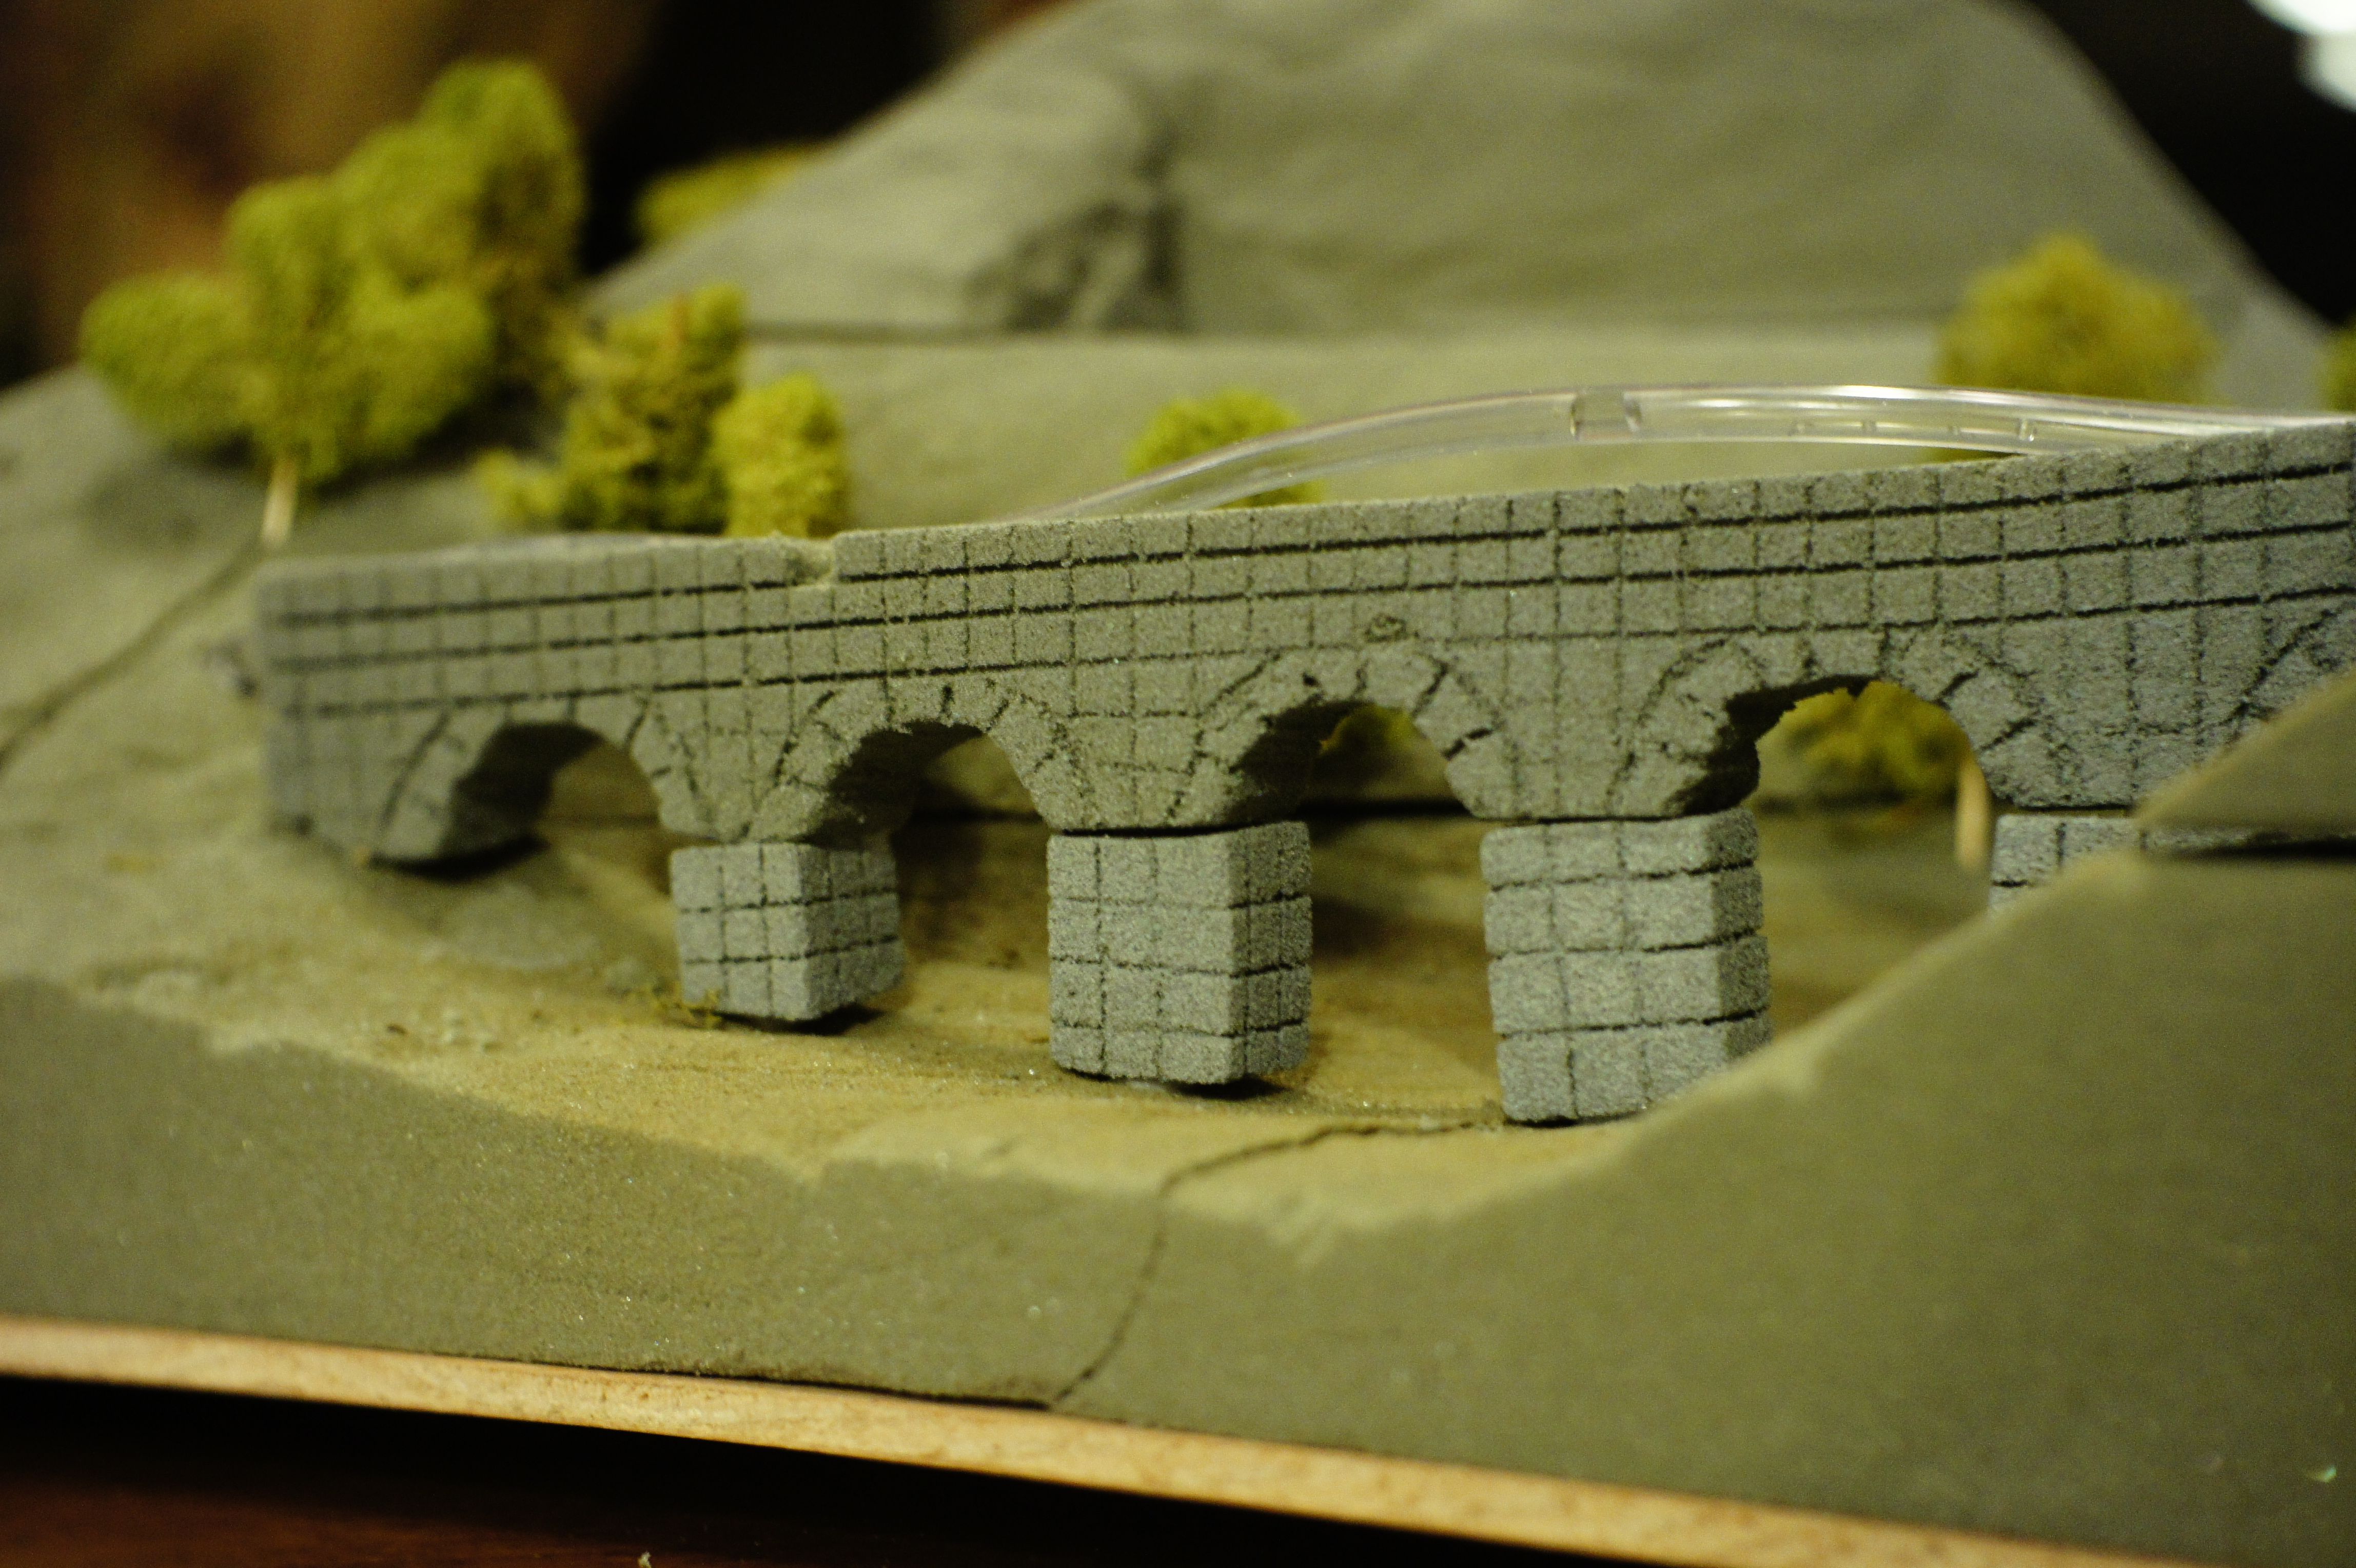 roman aqueduct model